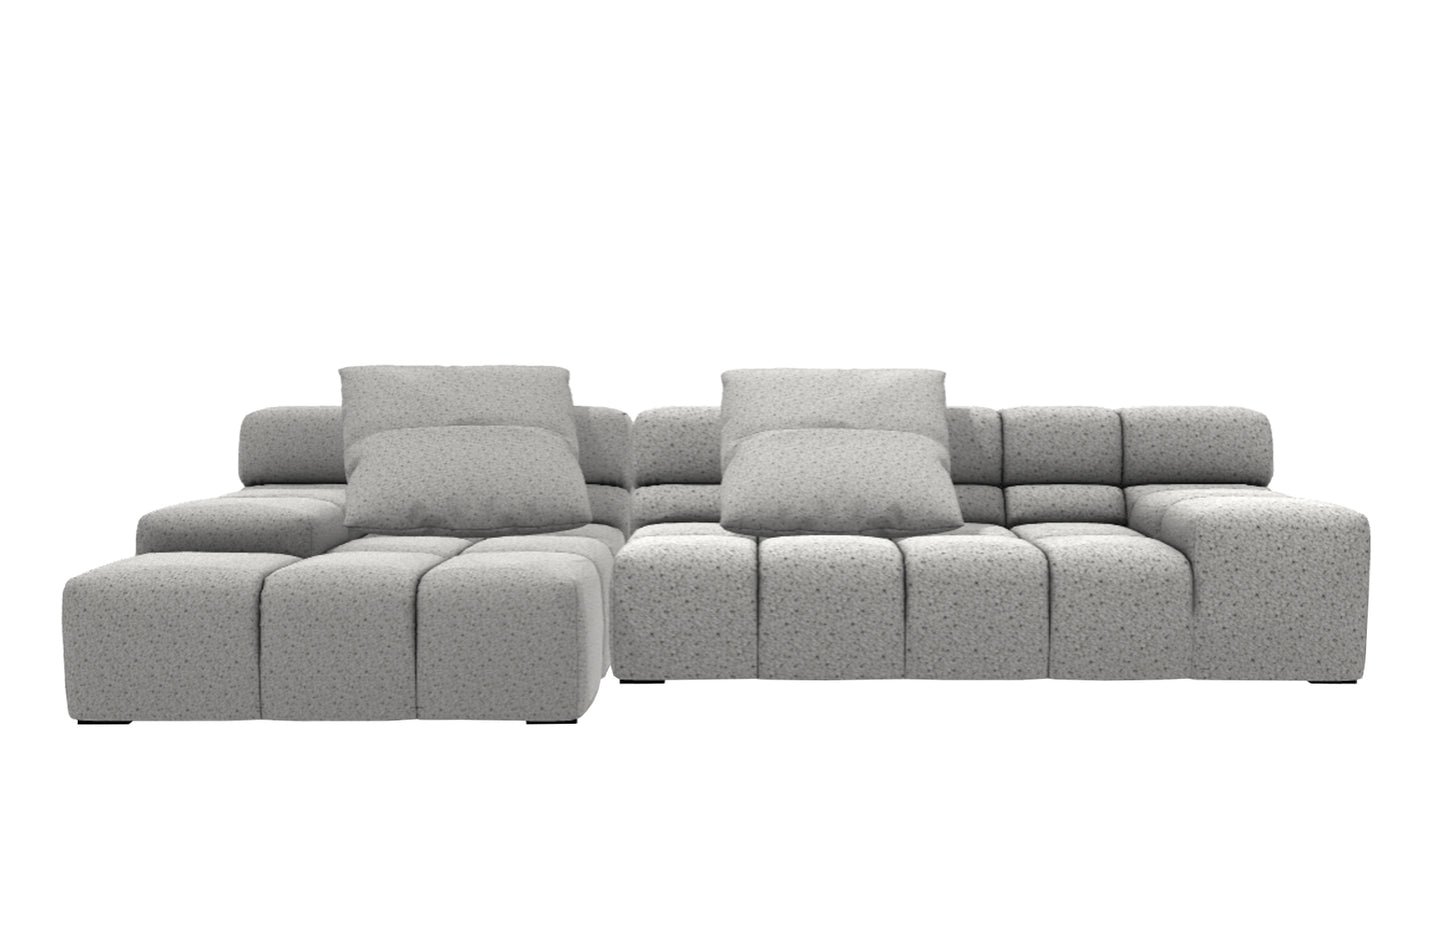 Tufty-Time Sofa
